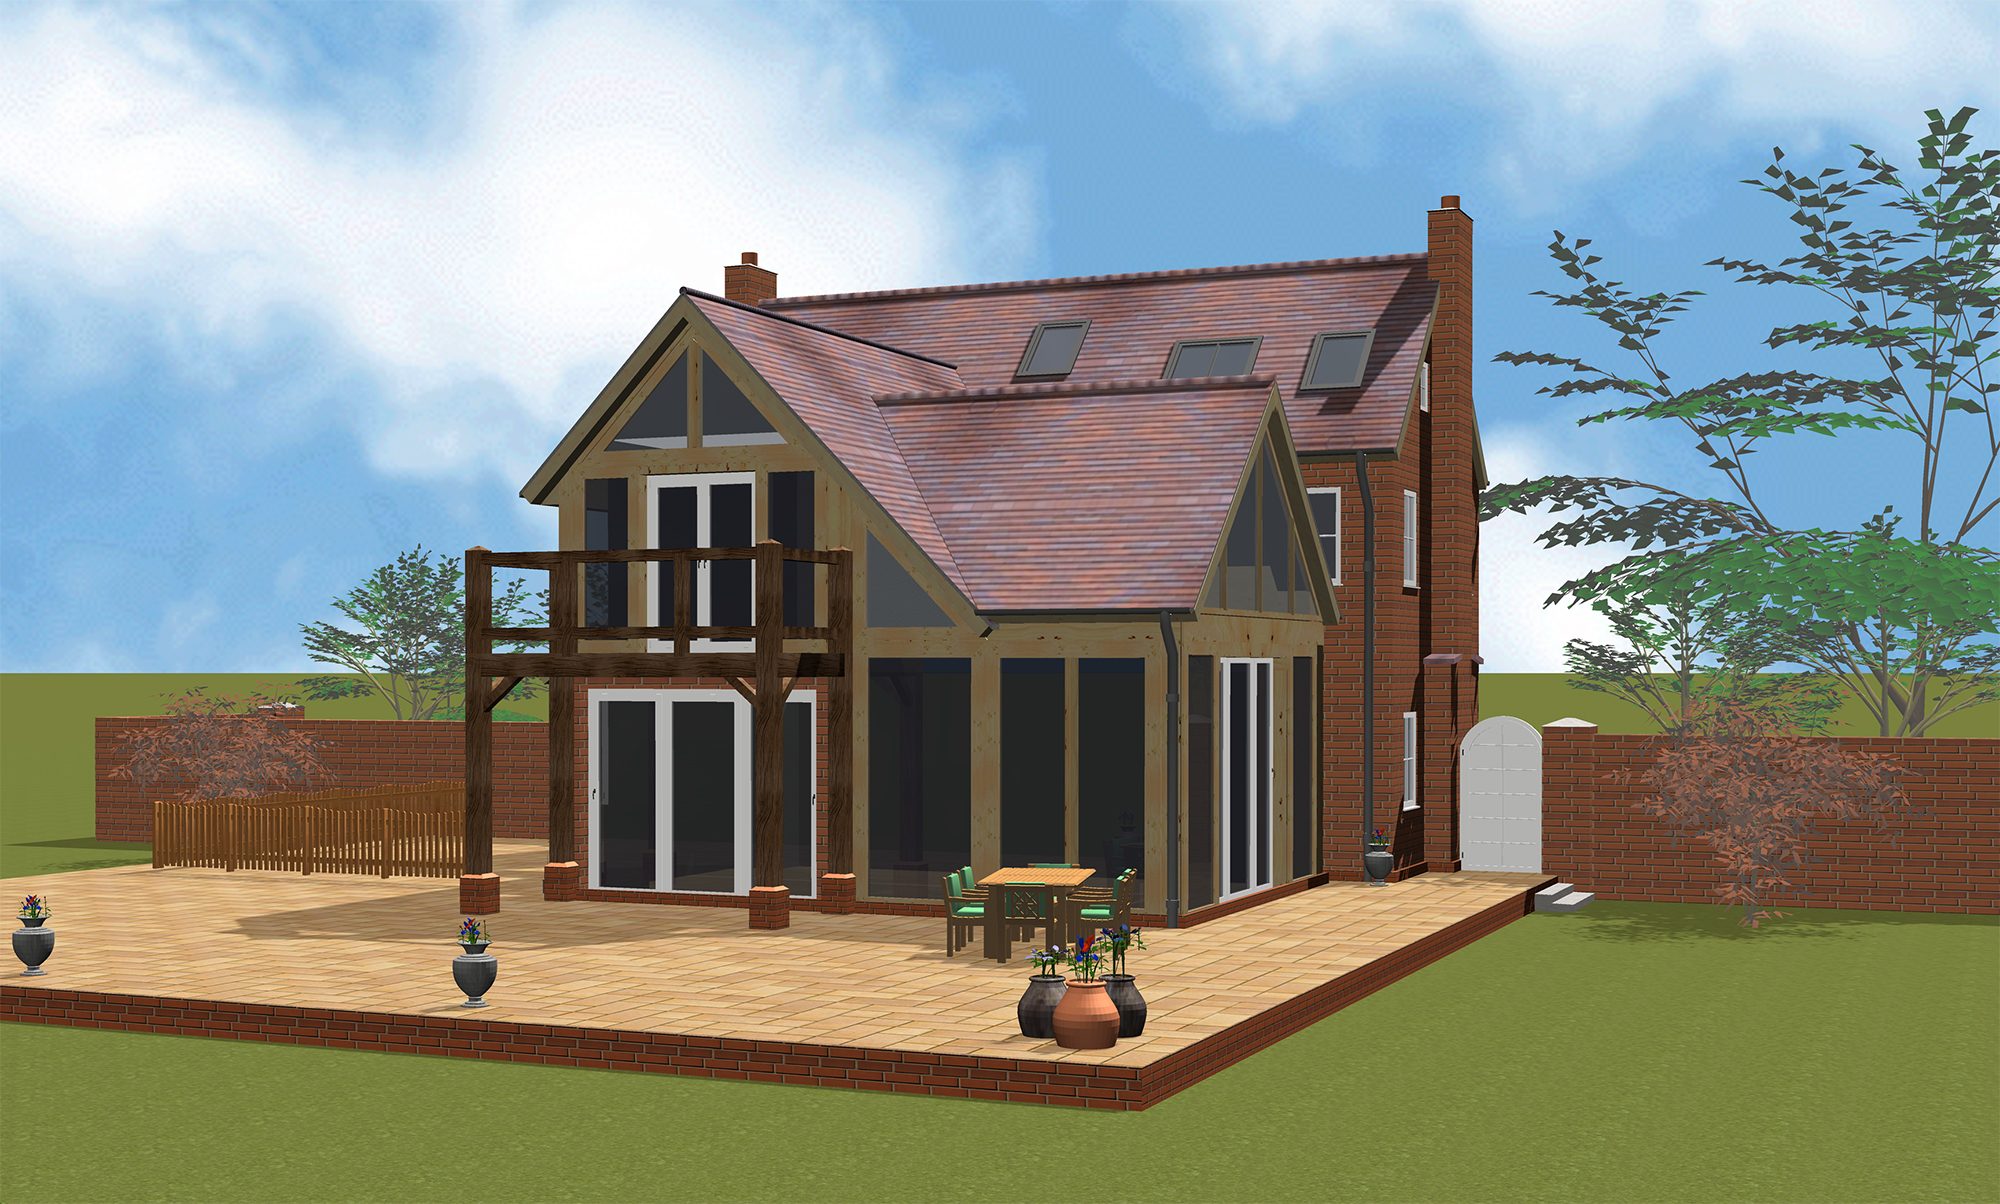 3D software render of house design